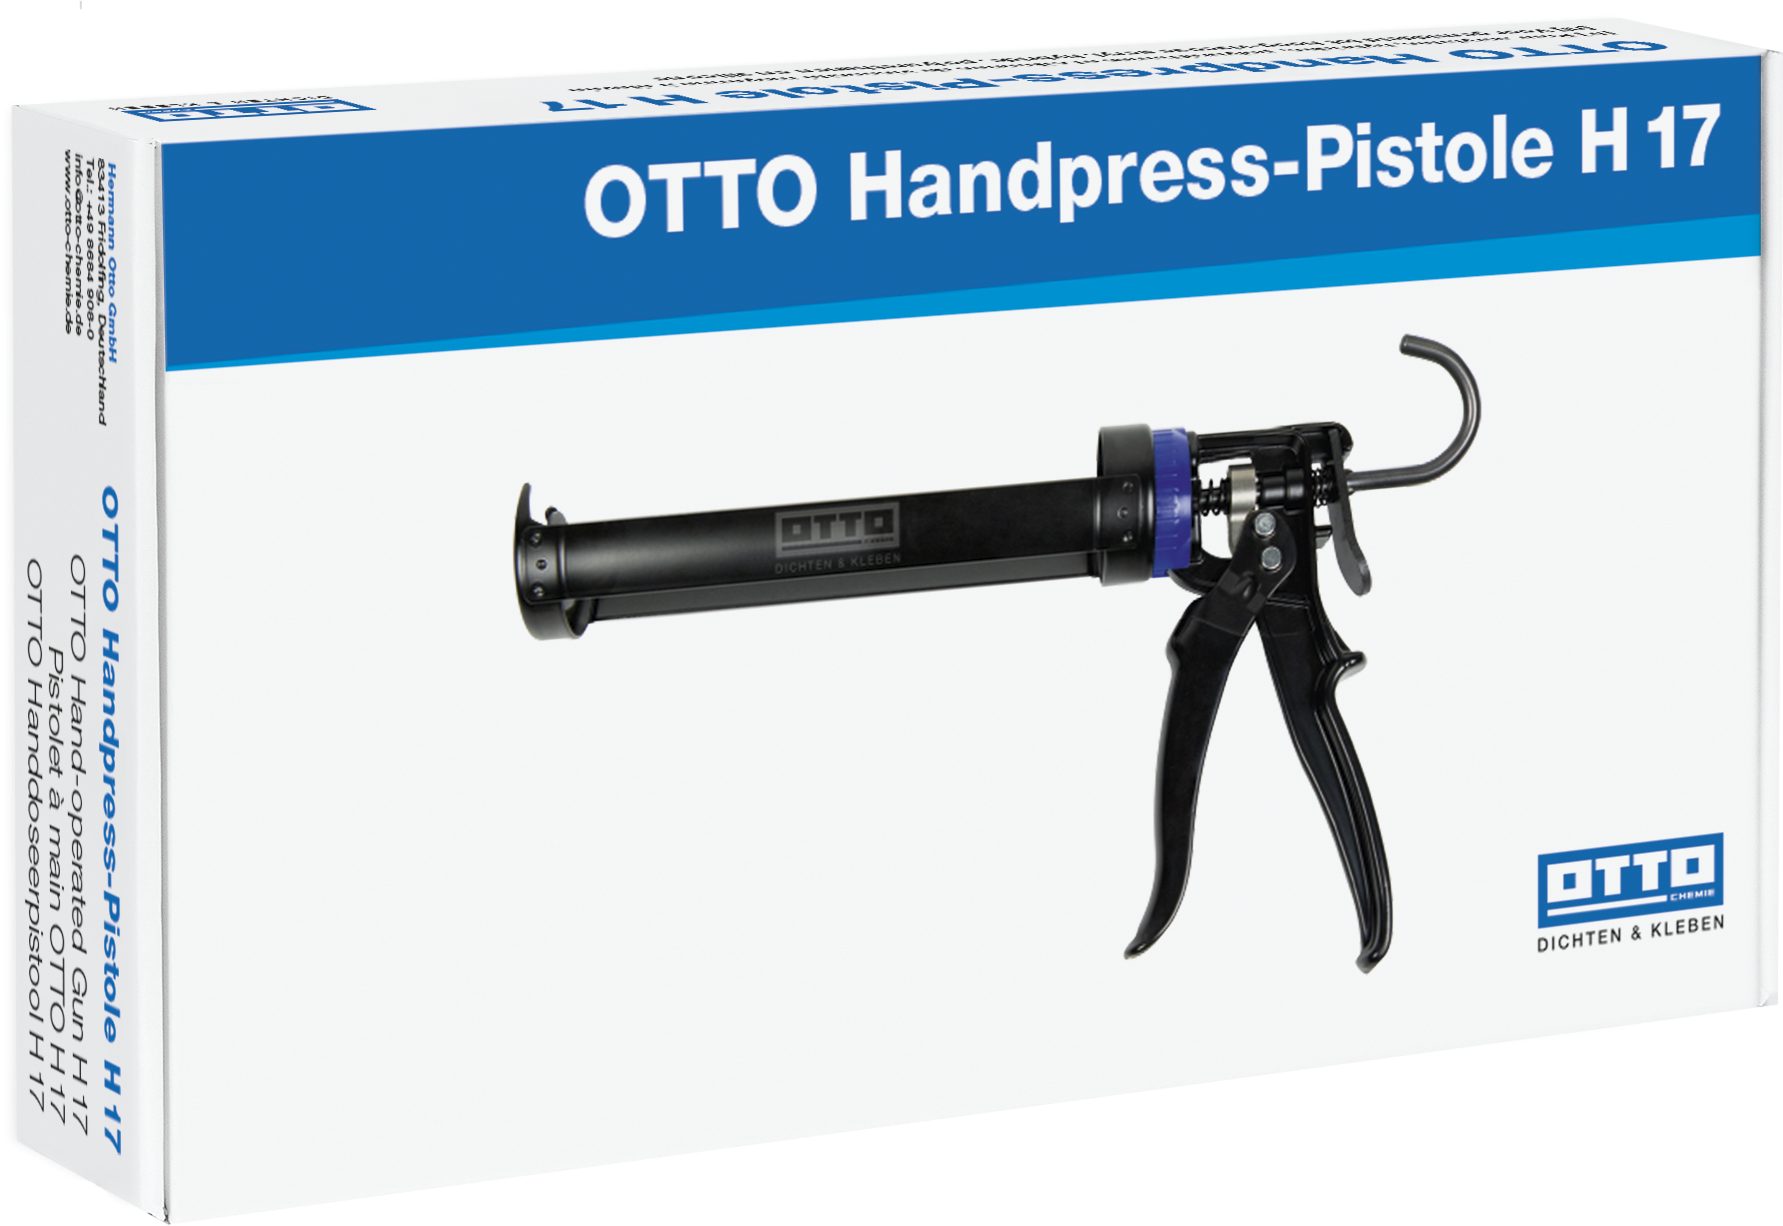 OTTO Handpress-Pistole H 17